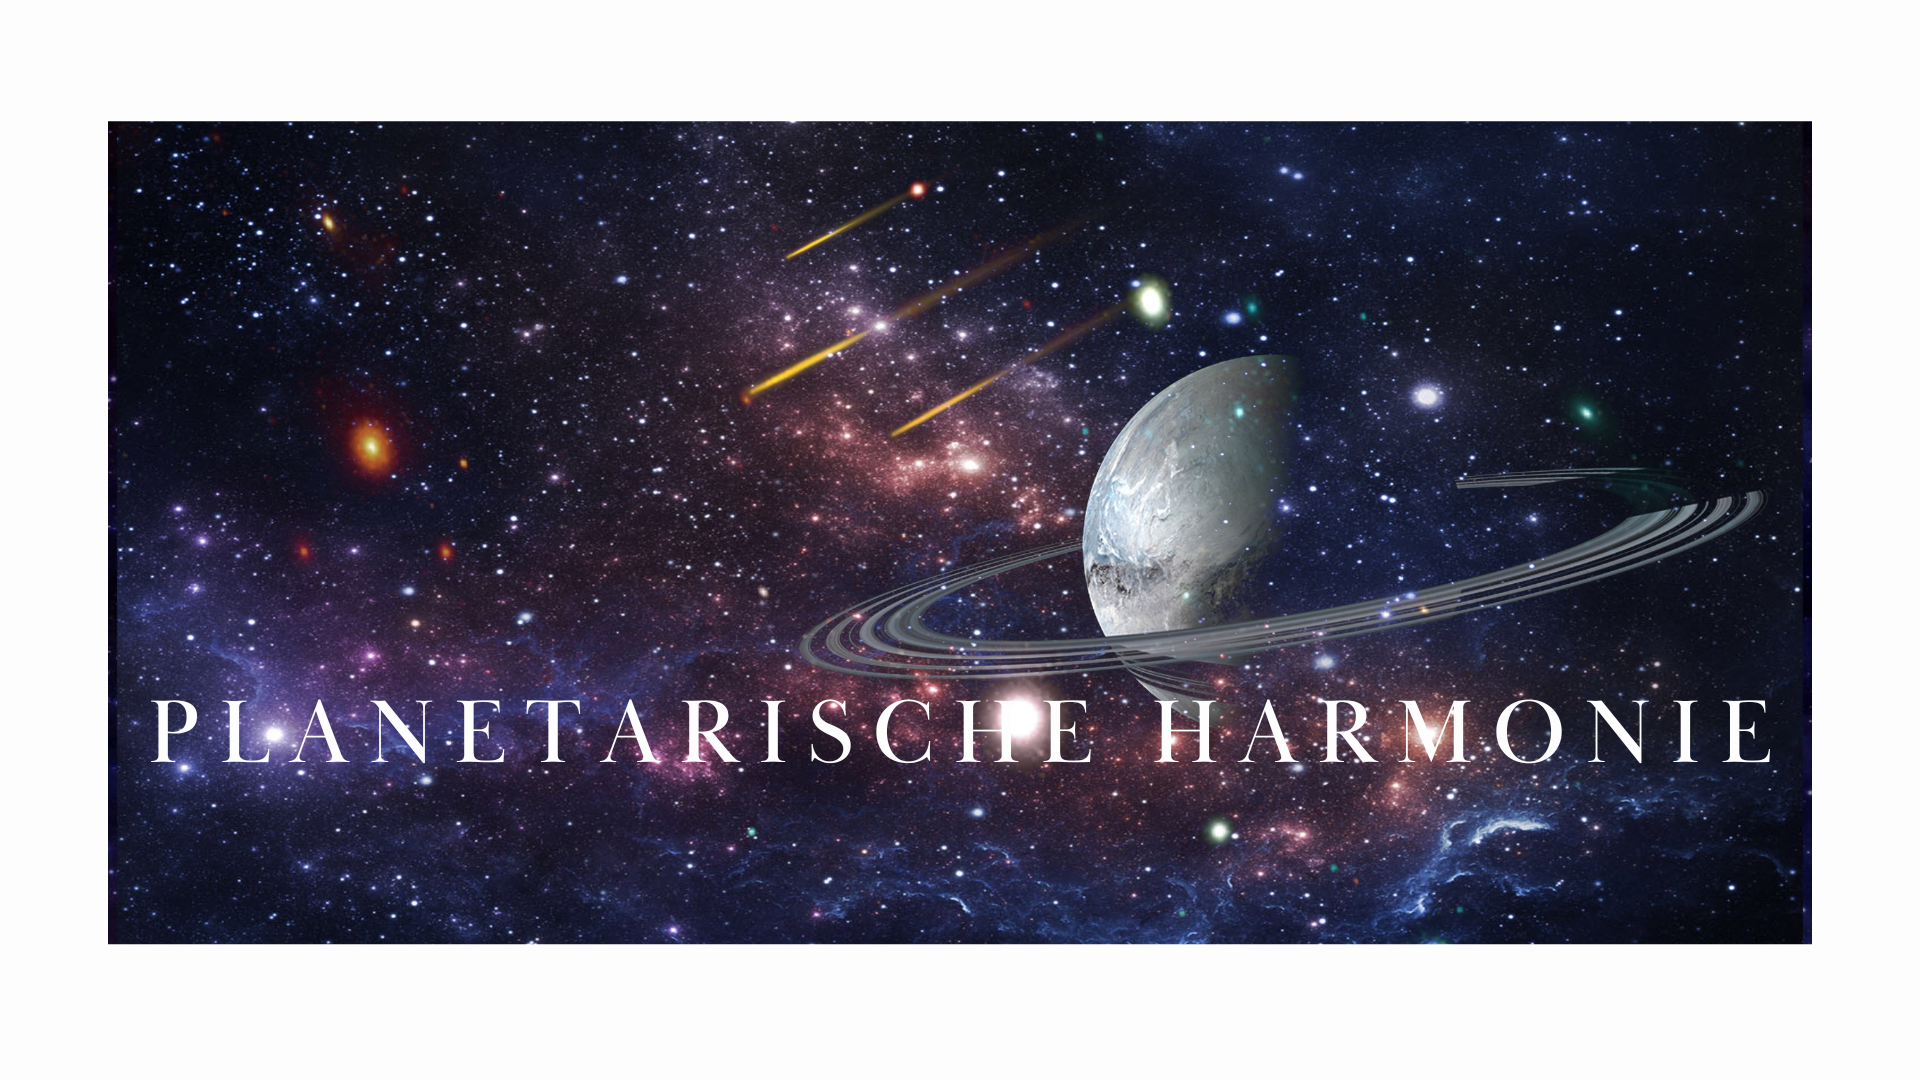 Die planetarische Harmonie